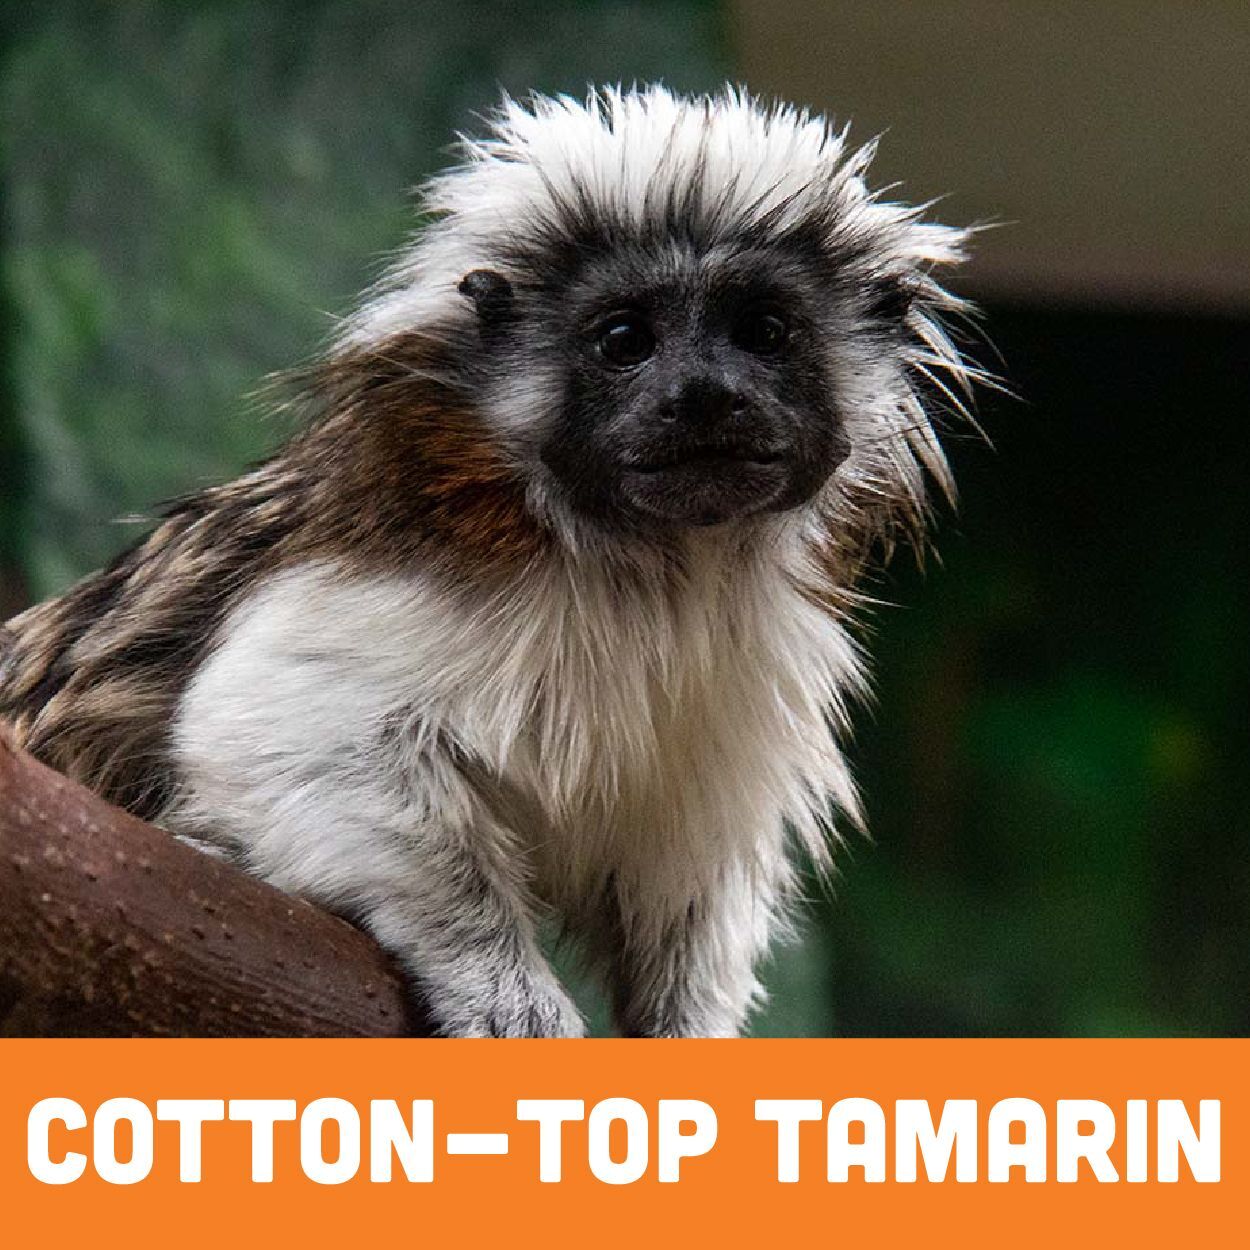 Cotton-top tamarin